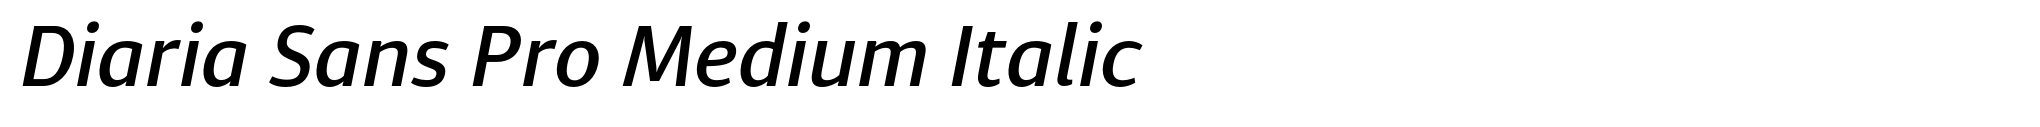 Diaria Sans Pro Medium Italic image